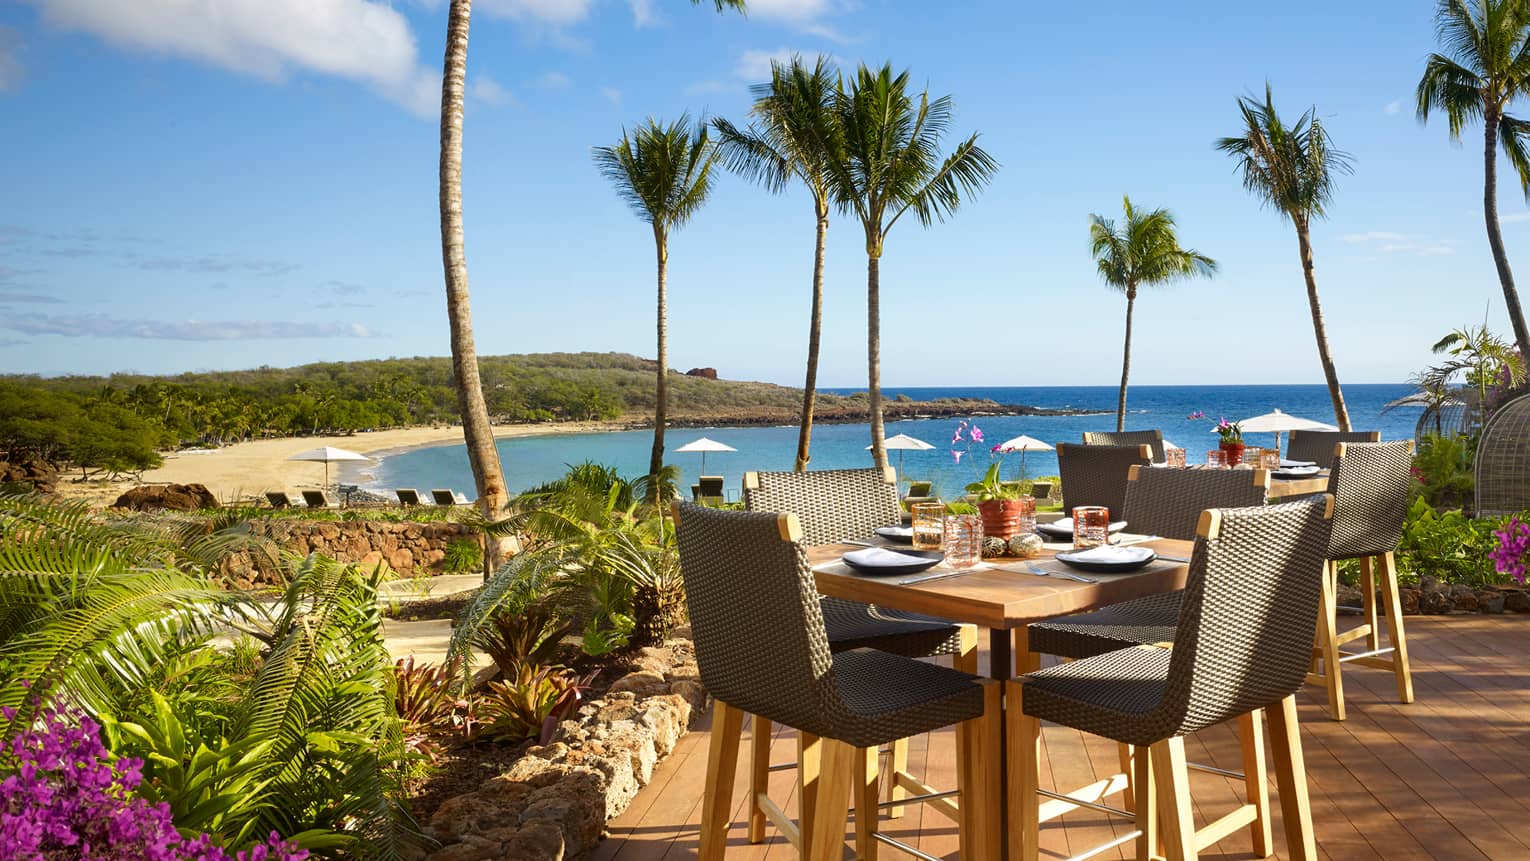 Malibu Farm Bar dining table, chairs on sunny patio overlooking beach, ocean